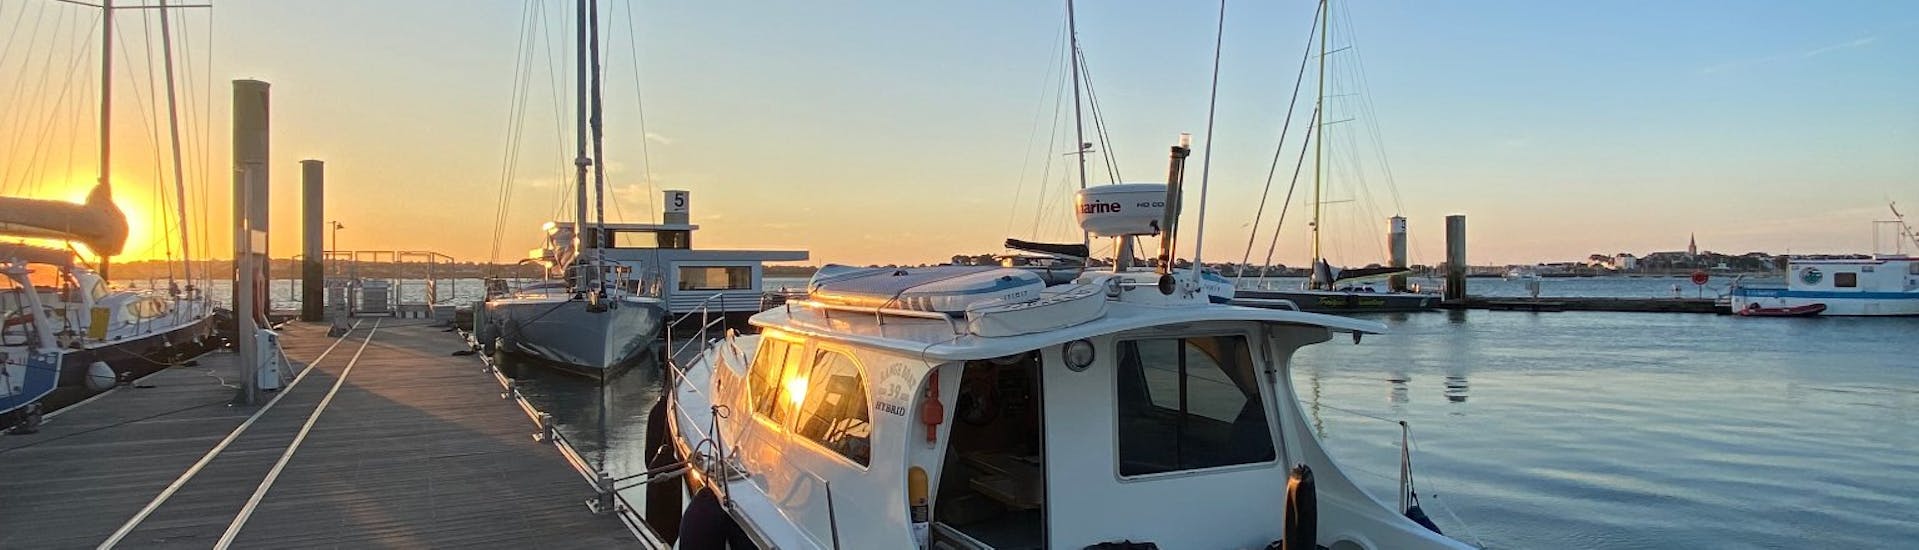 Een foto van de KeyLargo-boot in de haven tijdens de zonsondergang.